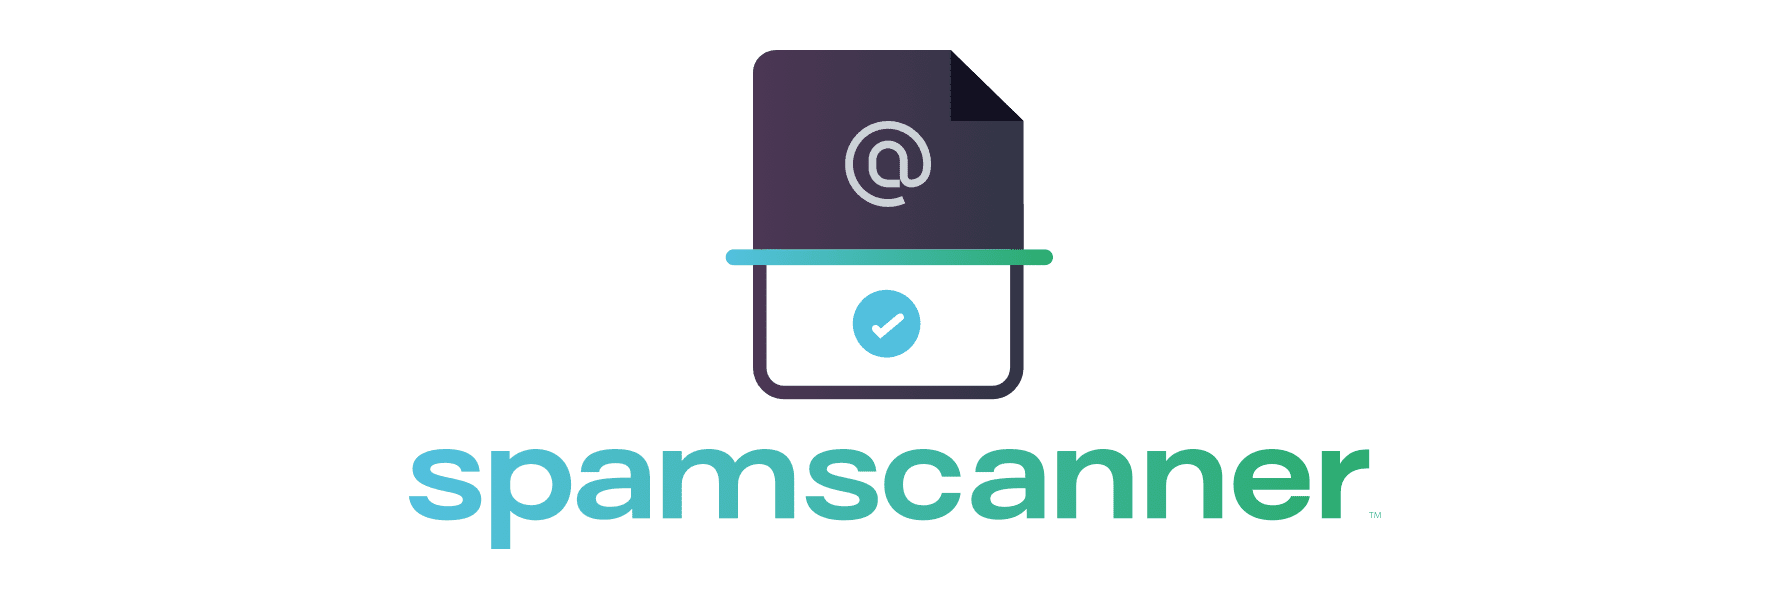 Spam Scanner